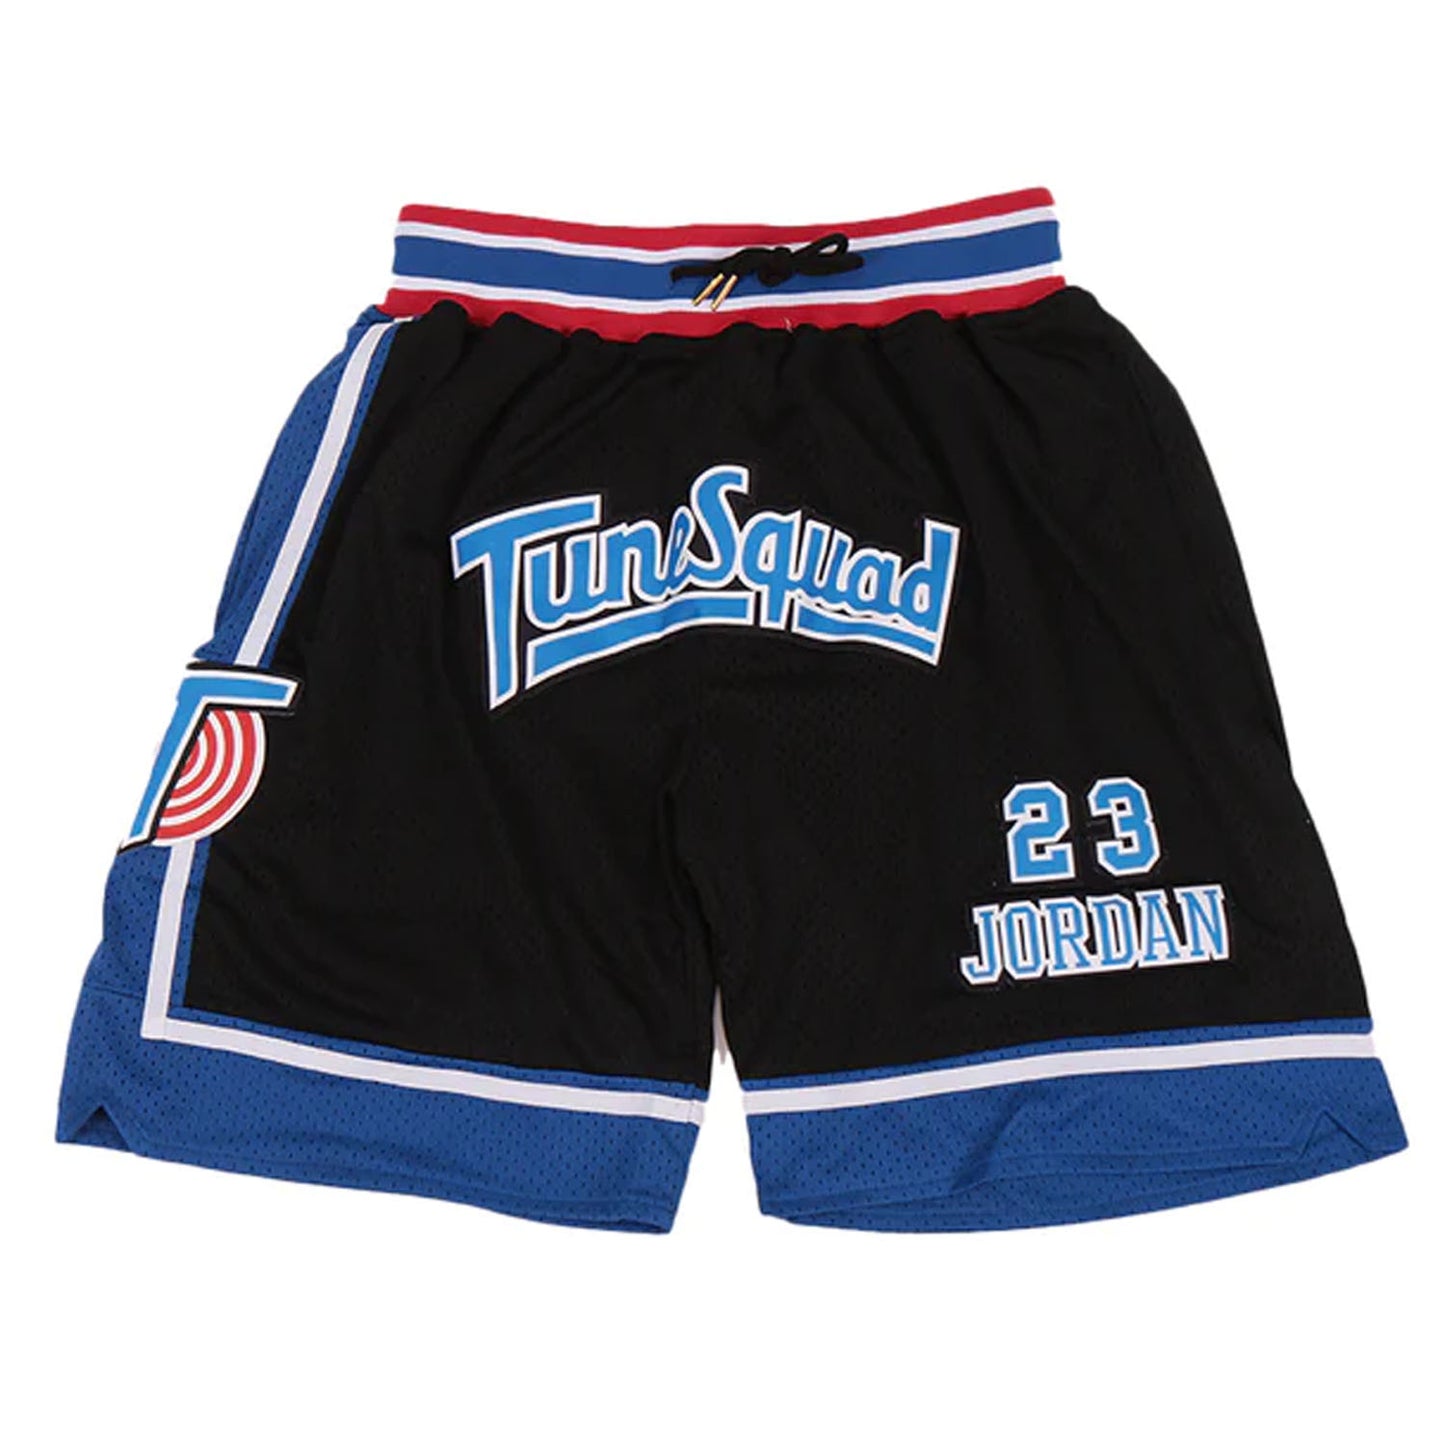 Michael Jordan #23 Tune Squad Shorts